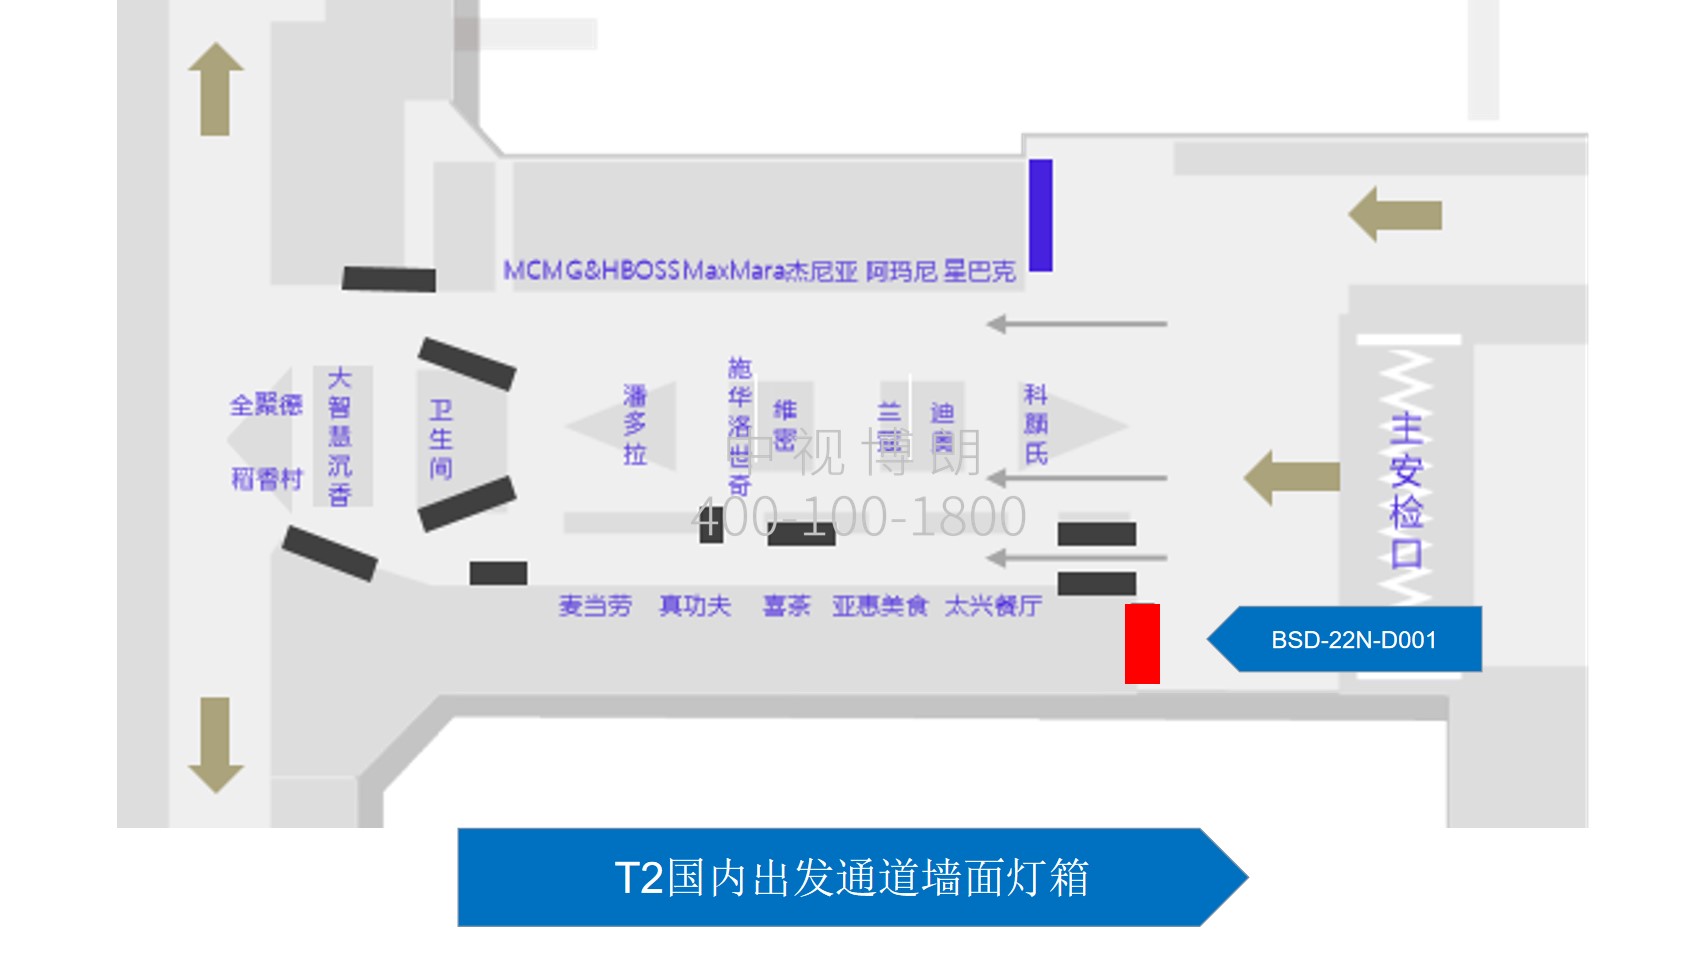 北京首都机场广告-T2国内VIP安检后墙面灯箱位置图